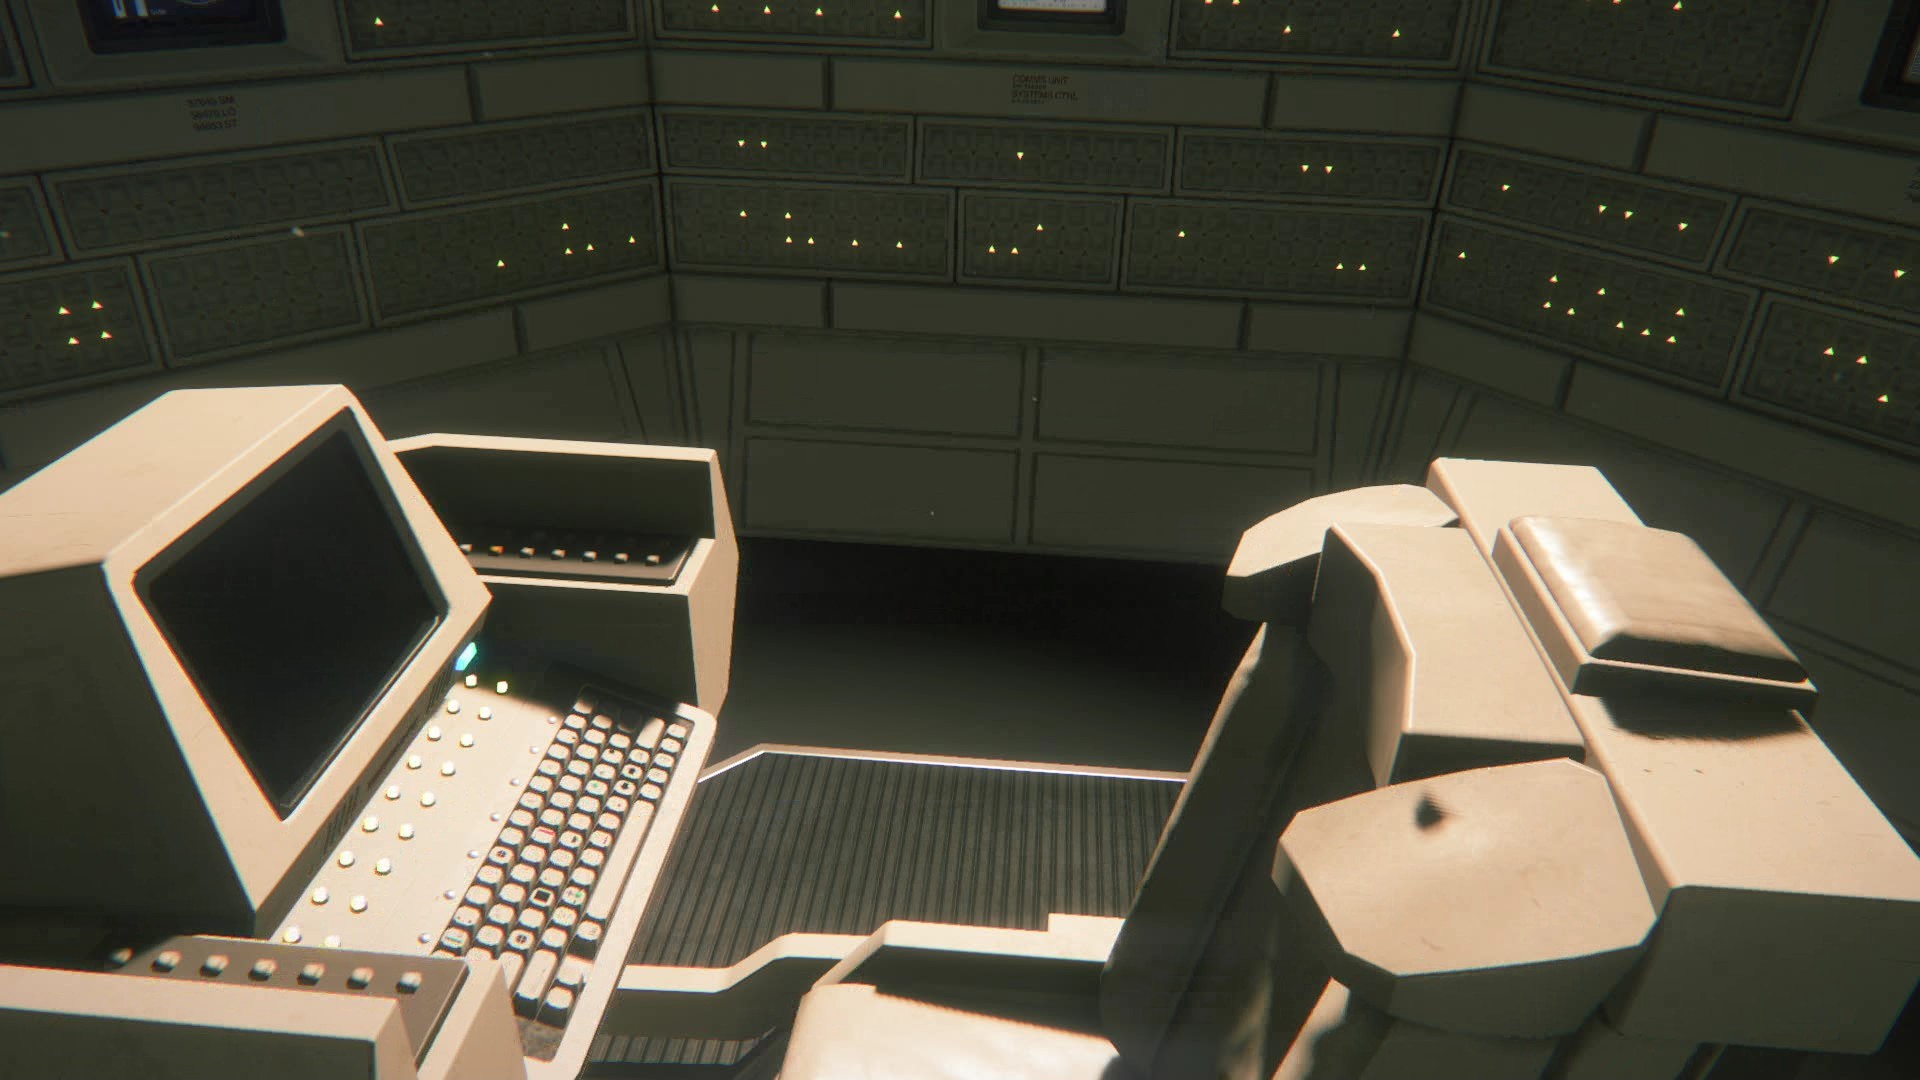 Alien Isolation recebe primeiro DLC que traz novos mapas e personagem